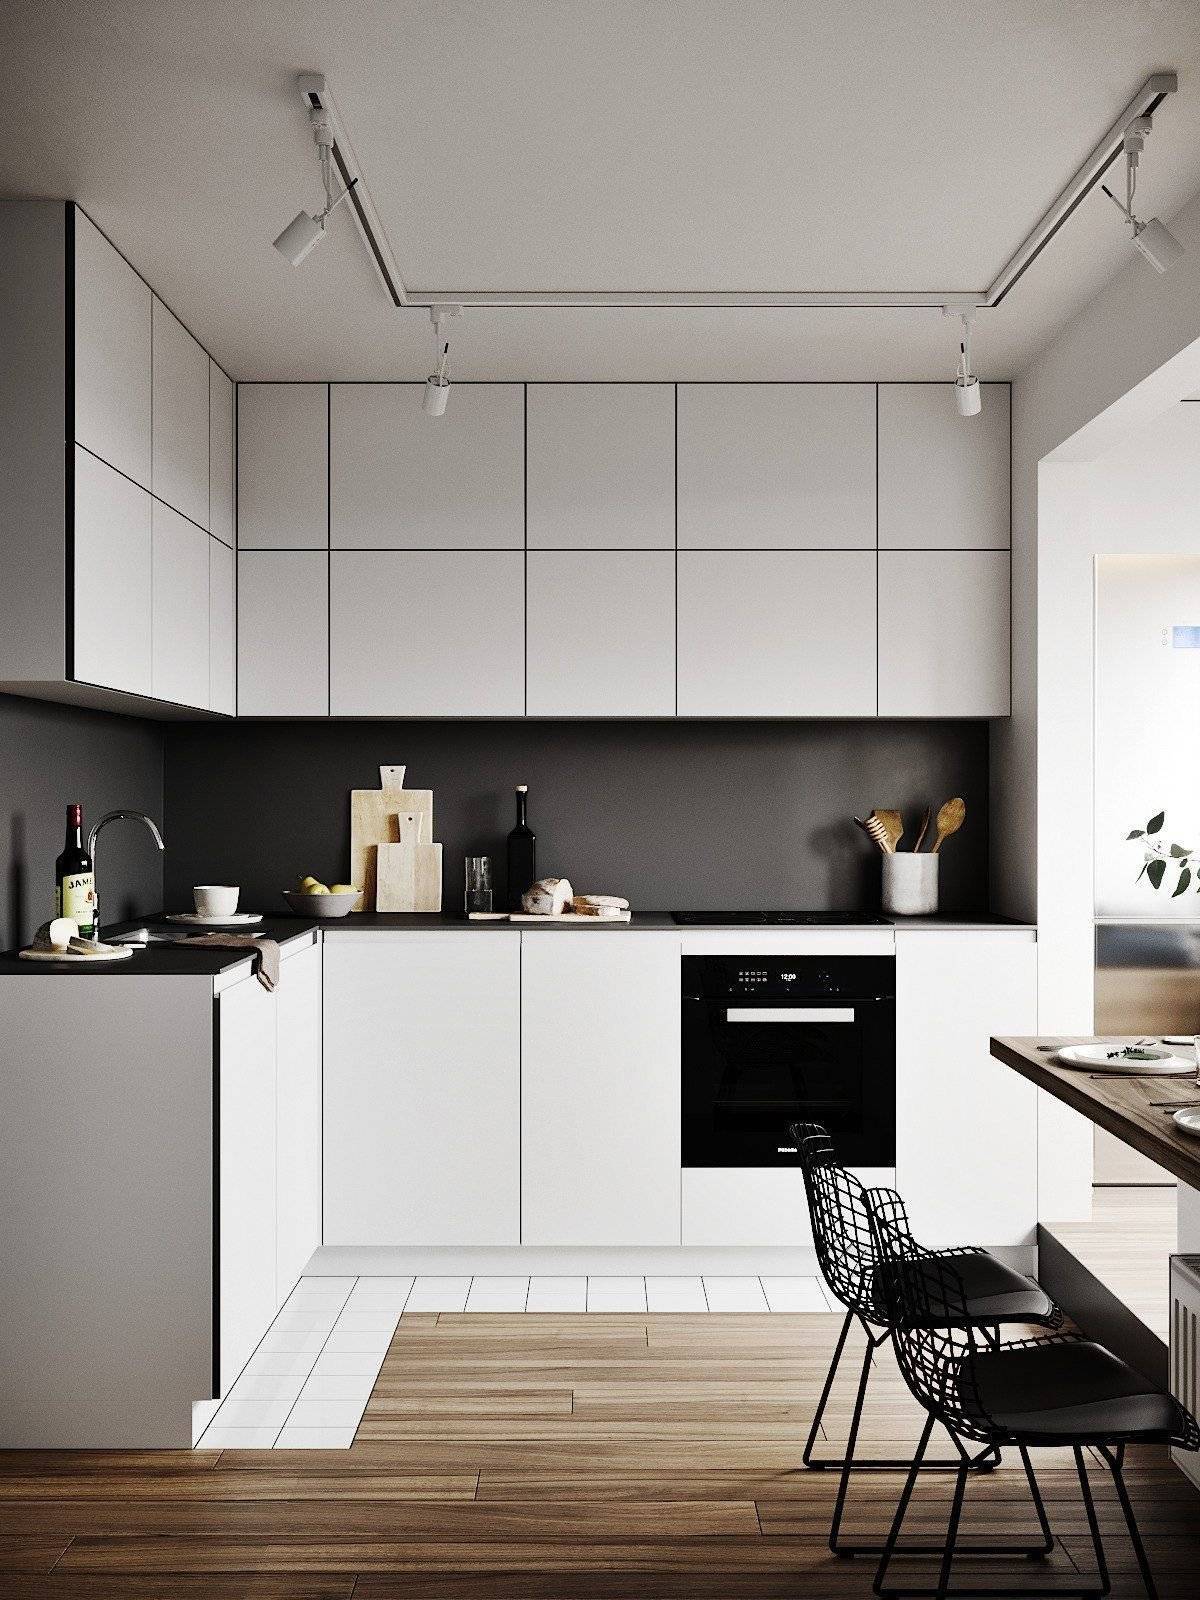 Кухня минимализм: популярные идеи для создания минималистического дизайна | дизайн и фото